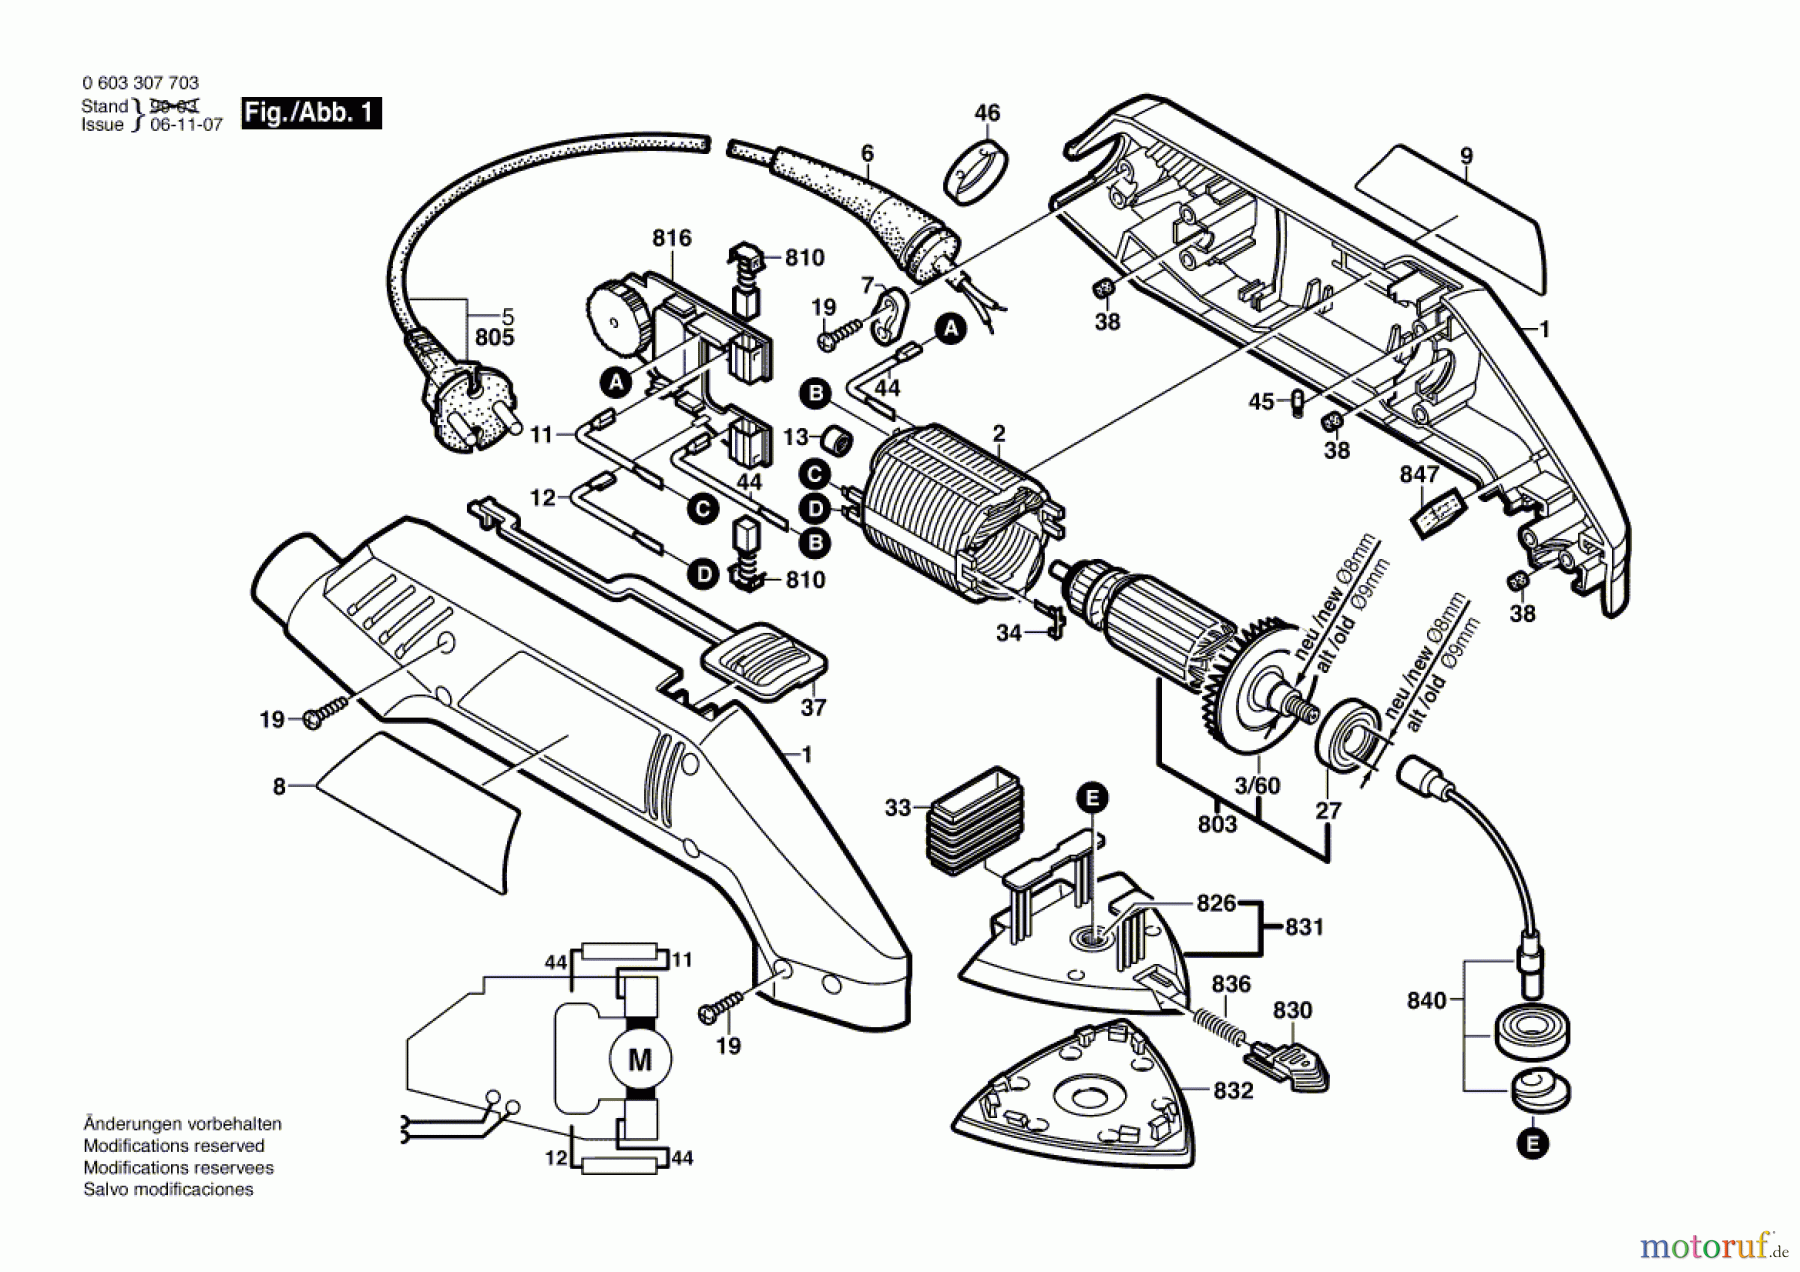  Bosch Werkzeug Deltaschleifer PDA 120 E Seite 1